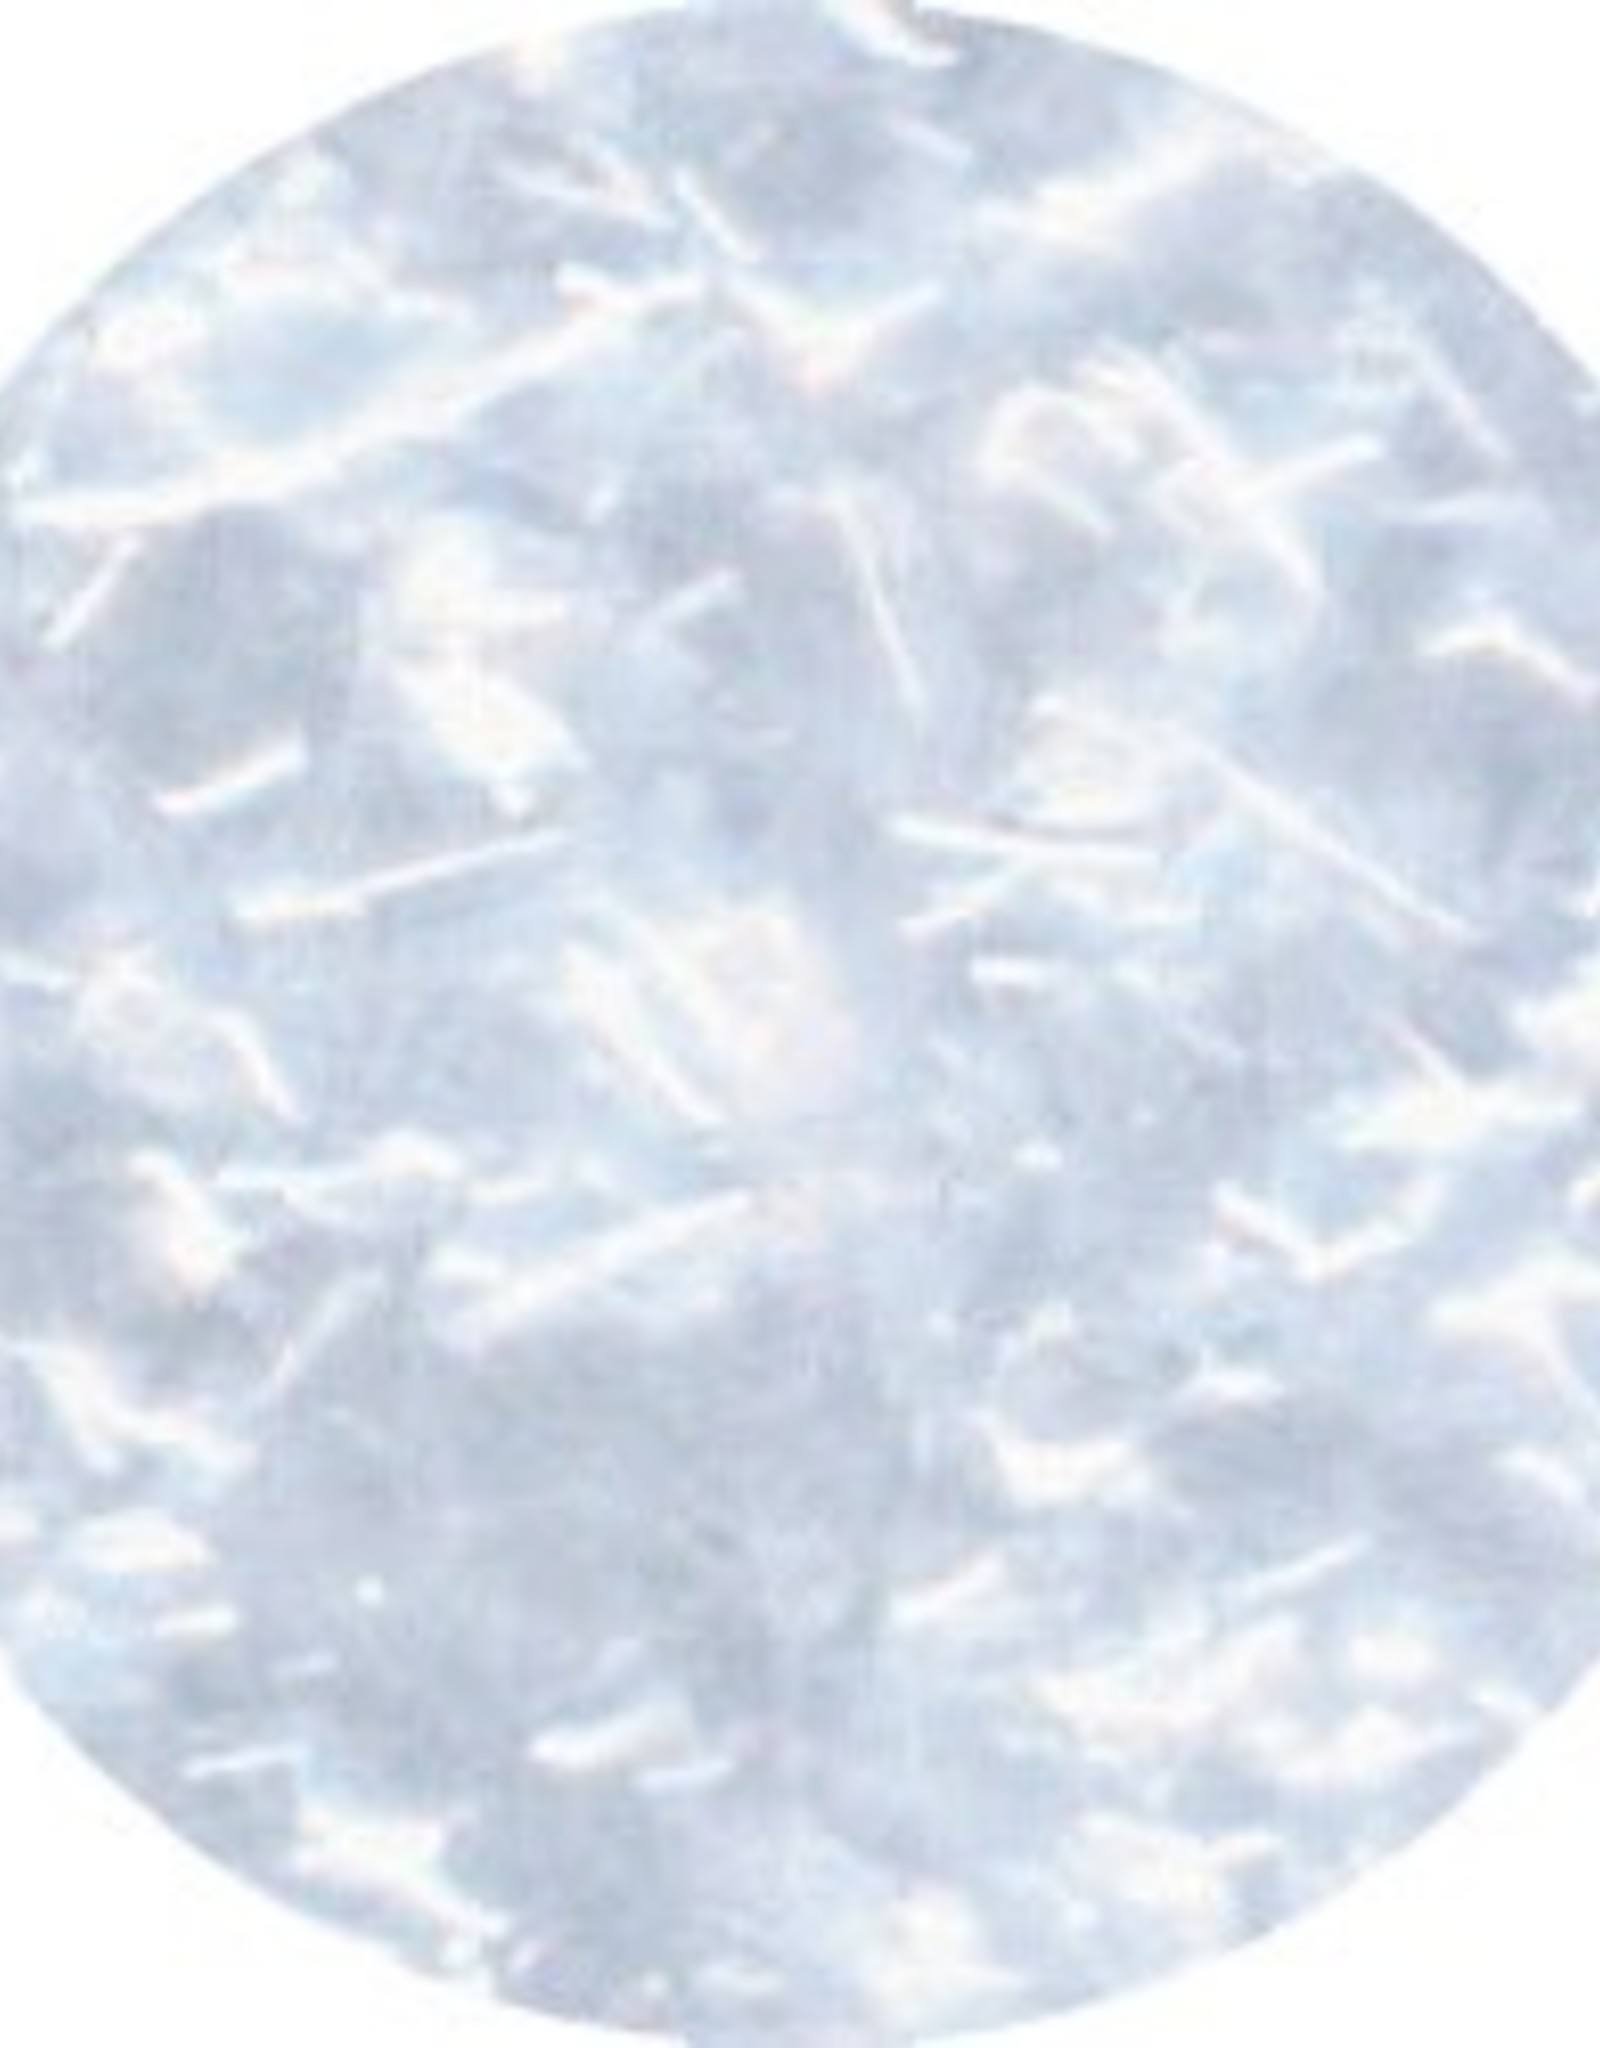 Celebakes Edible Glitter (White) 1 oz.